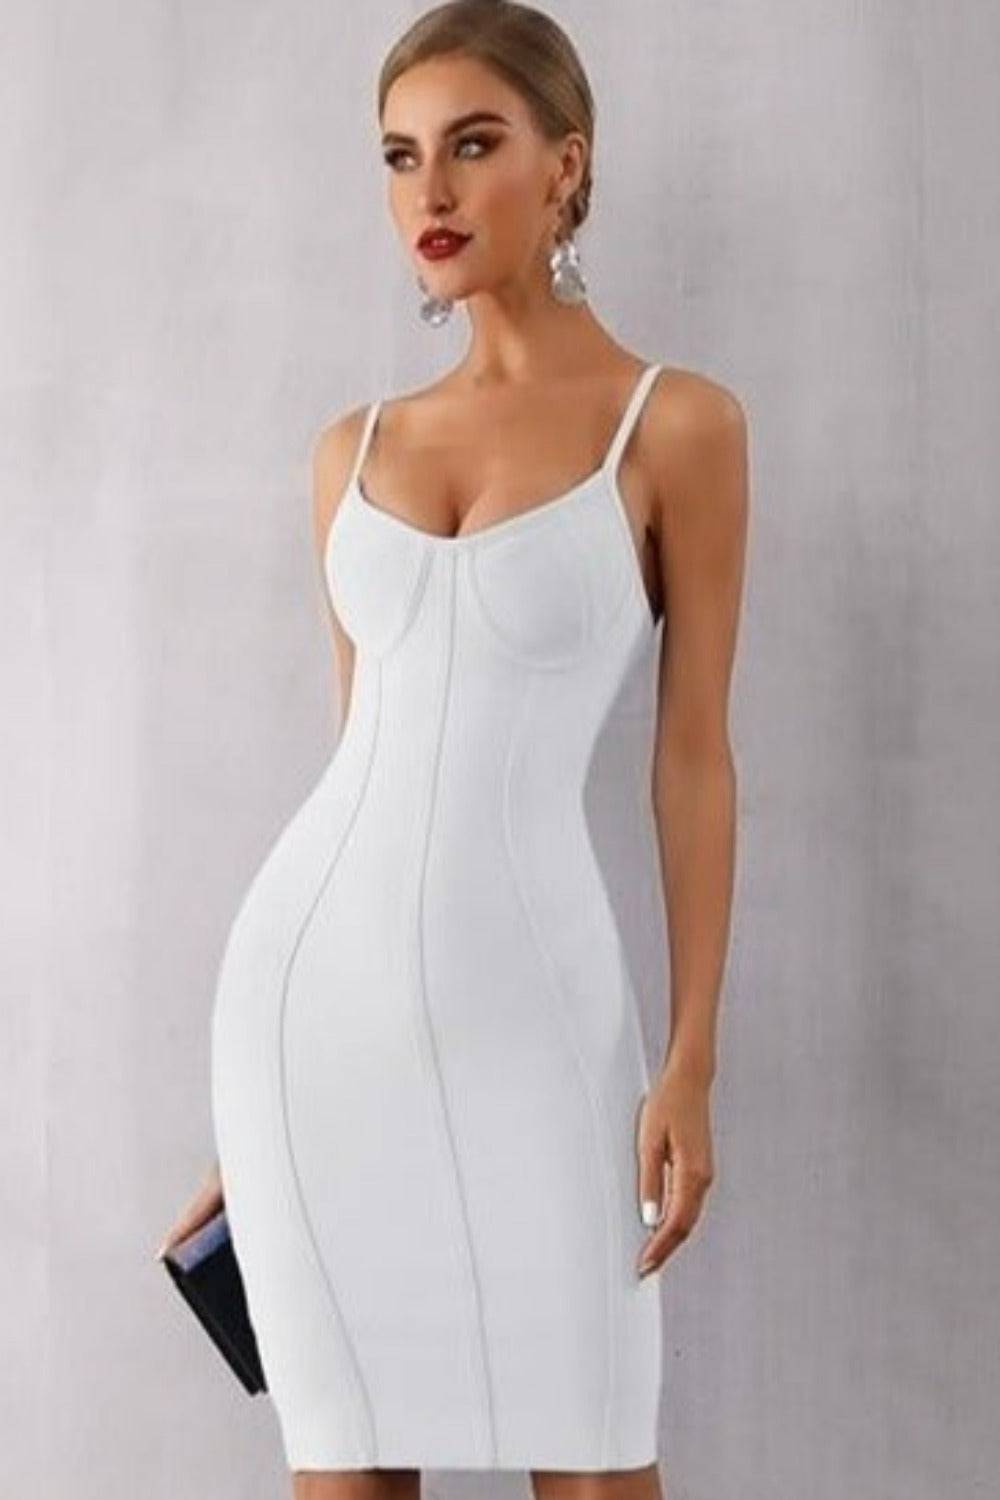 Body Contour White Bodycon Mini Dress - TGC Boutique - White Bodycon Dress